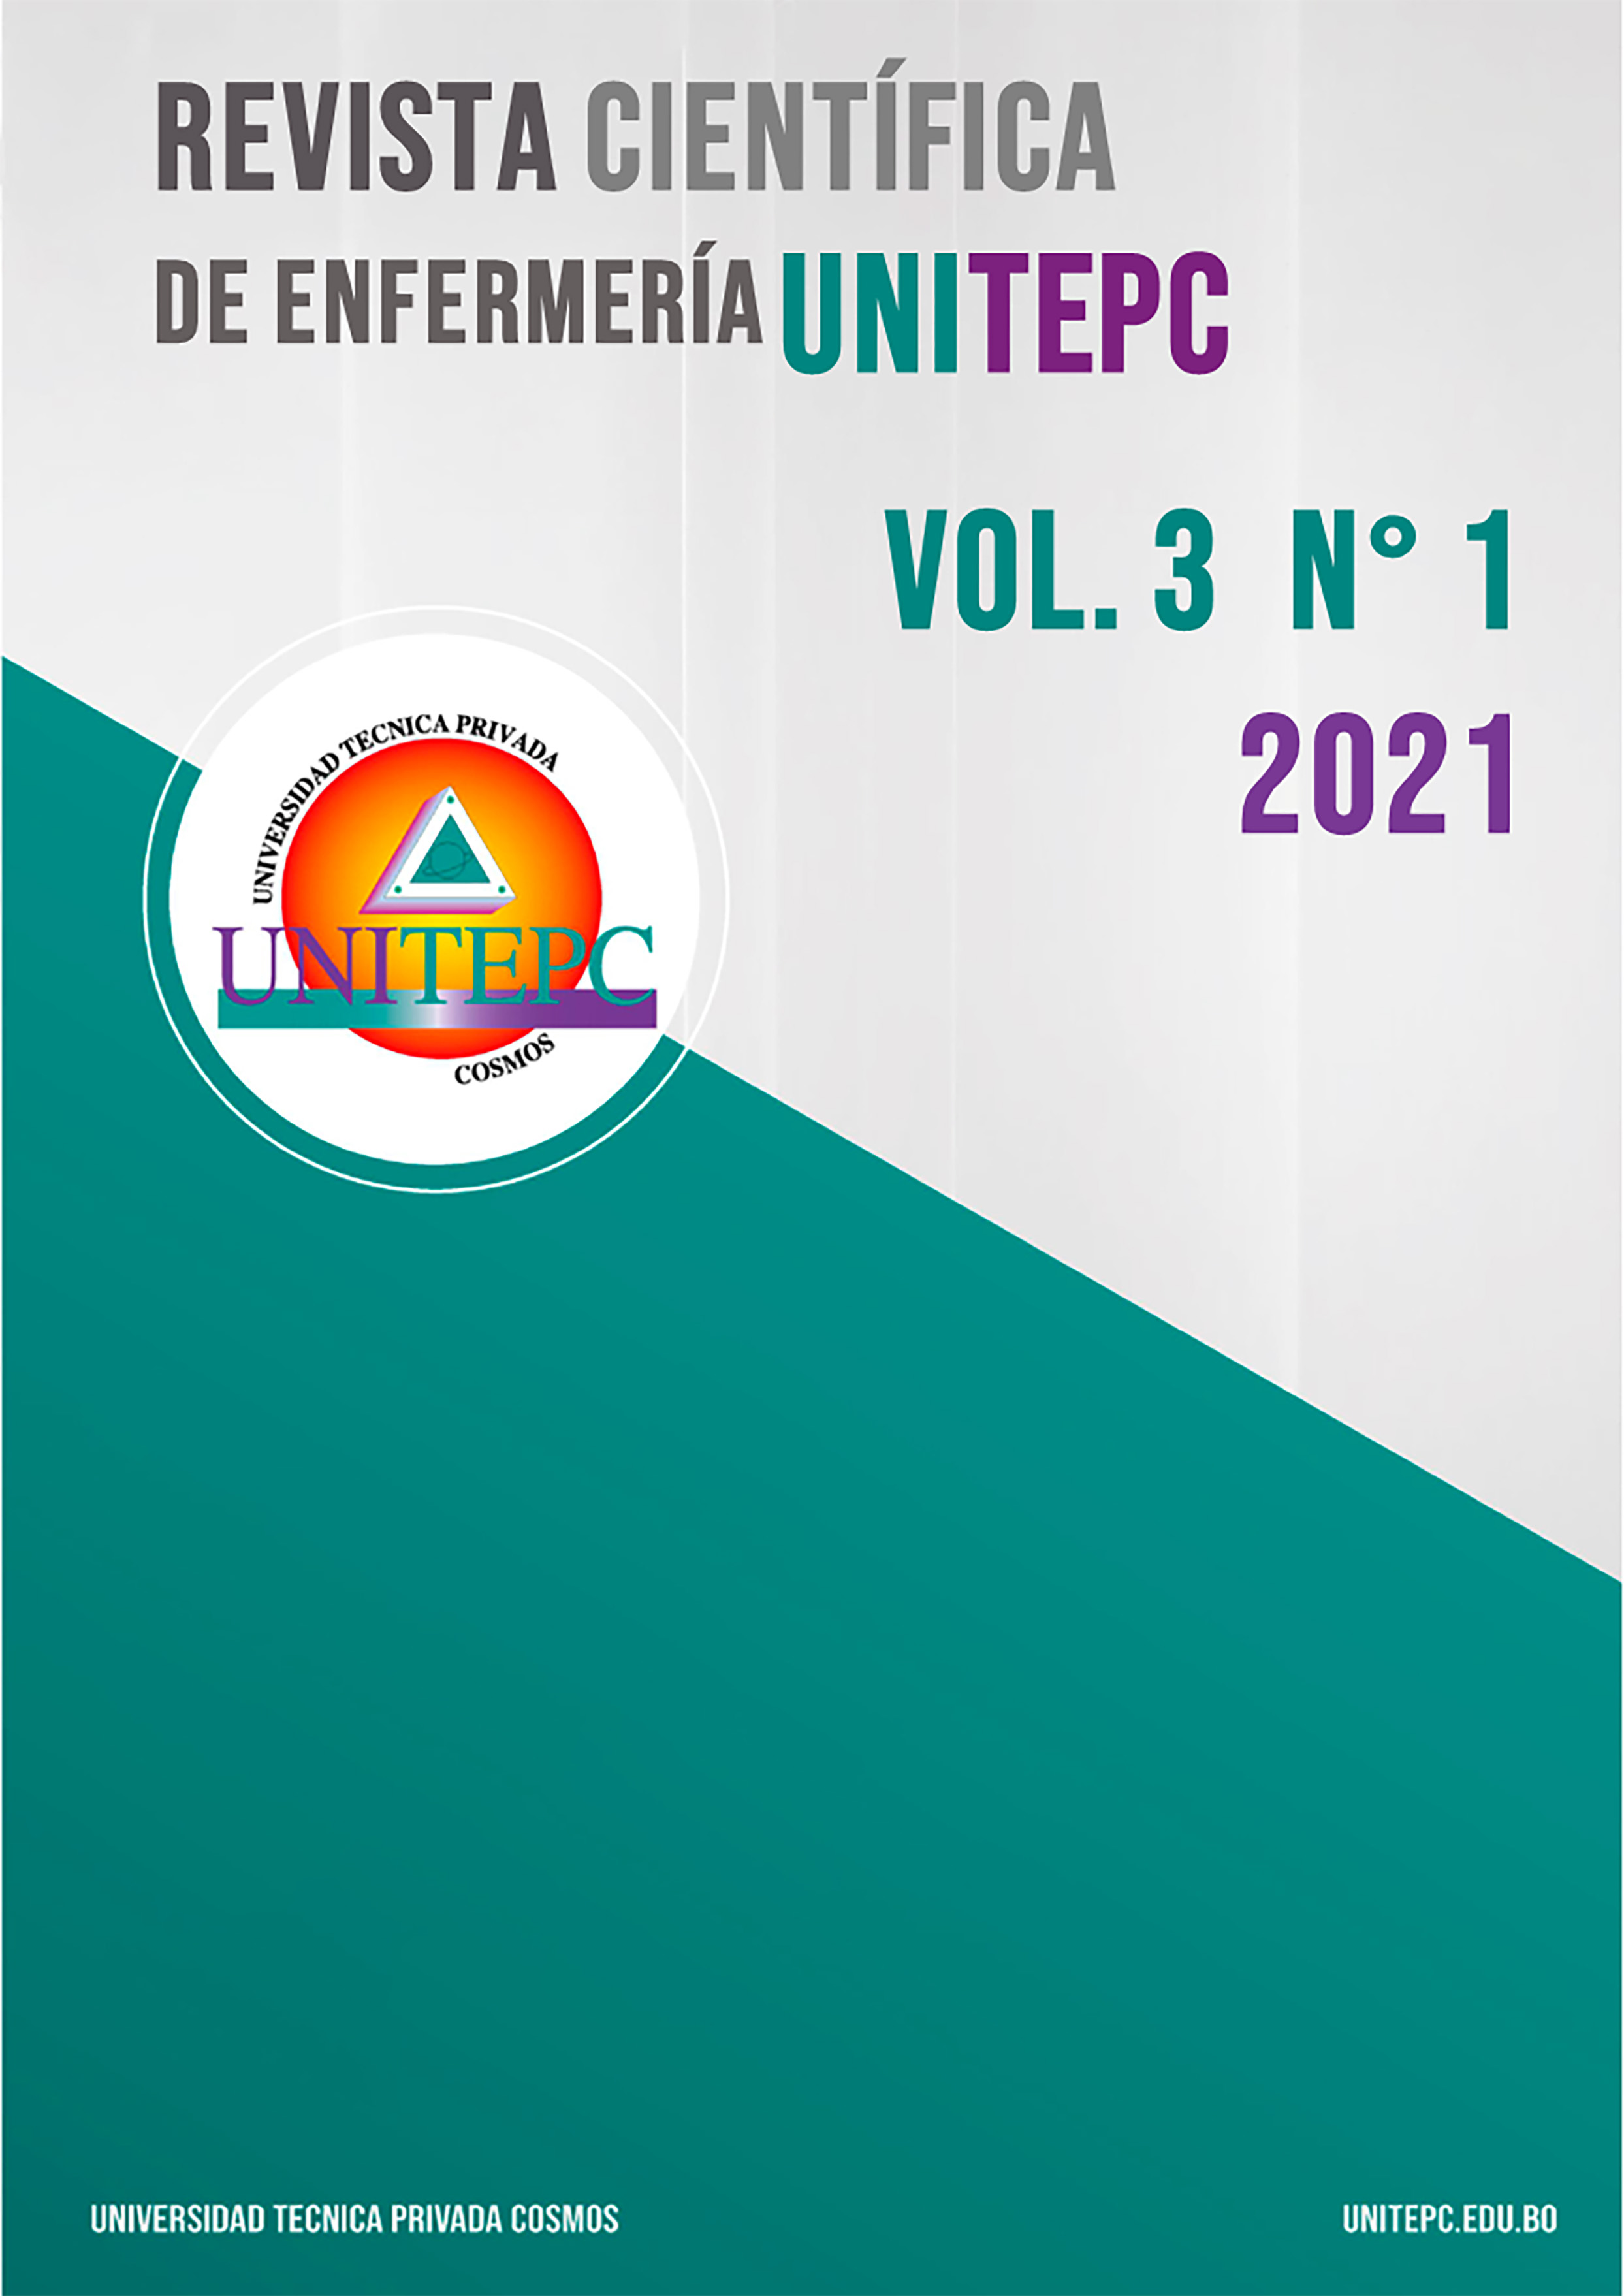 					View Vol. 3 No. 1 (2021): Revista Científica de Enfermería UNITEPC
				